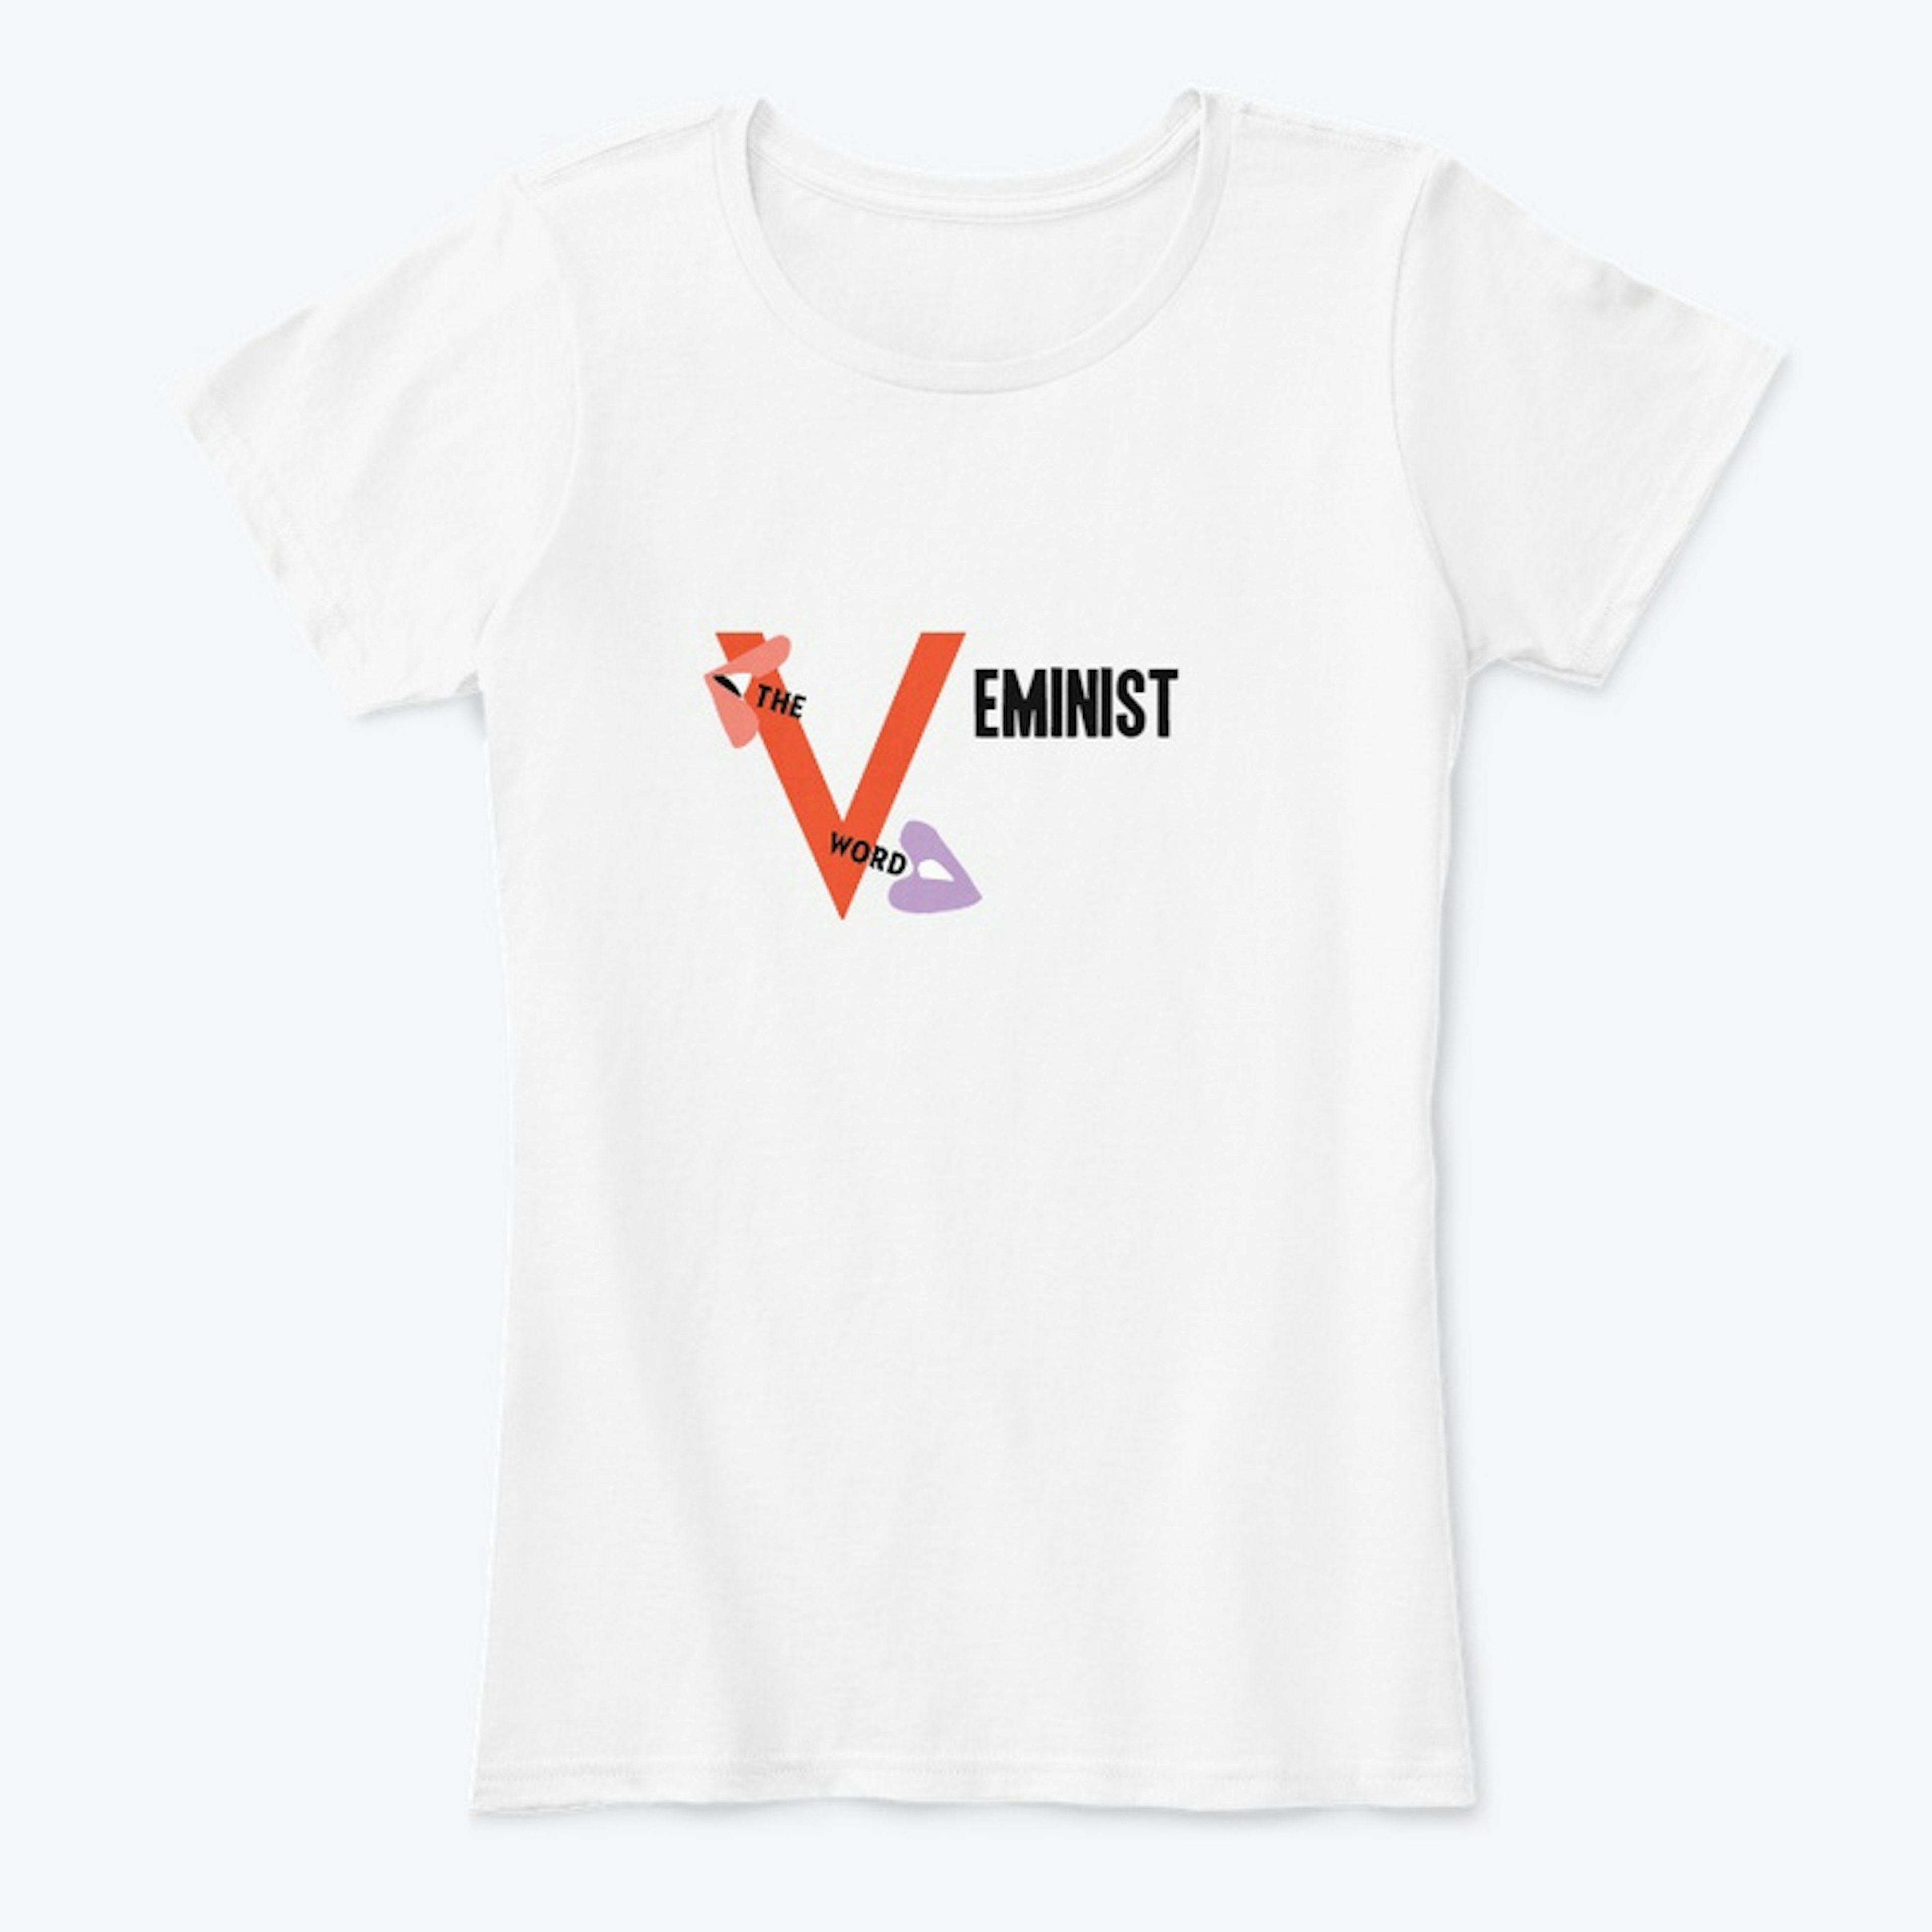 V is for "V"eminist